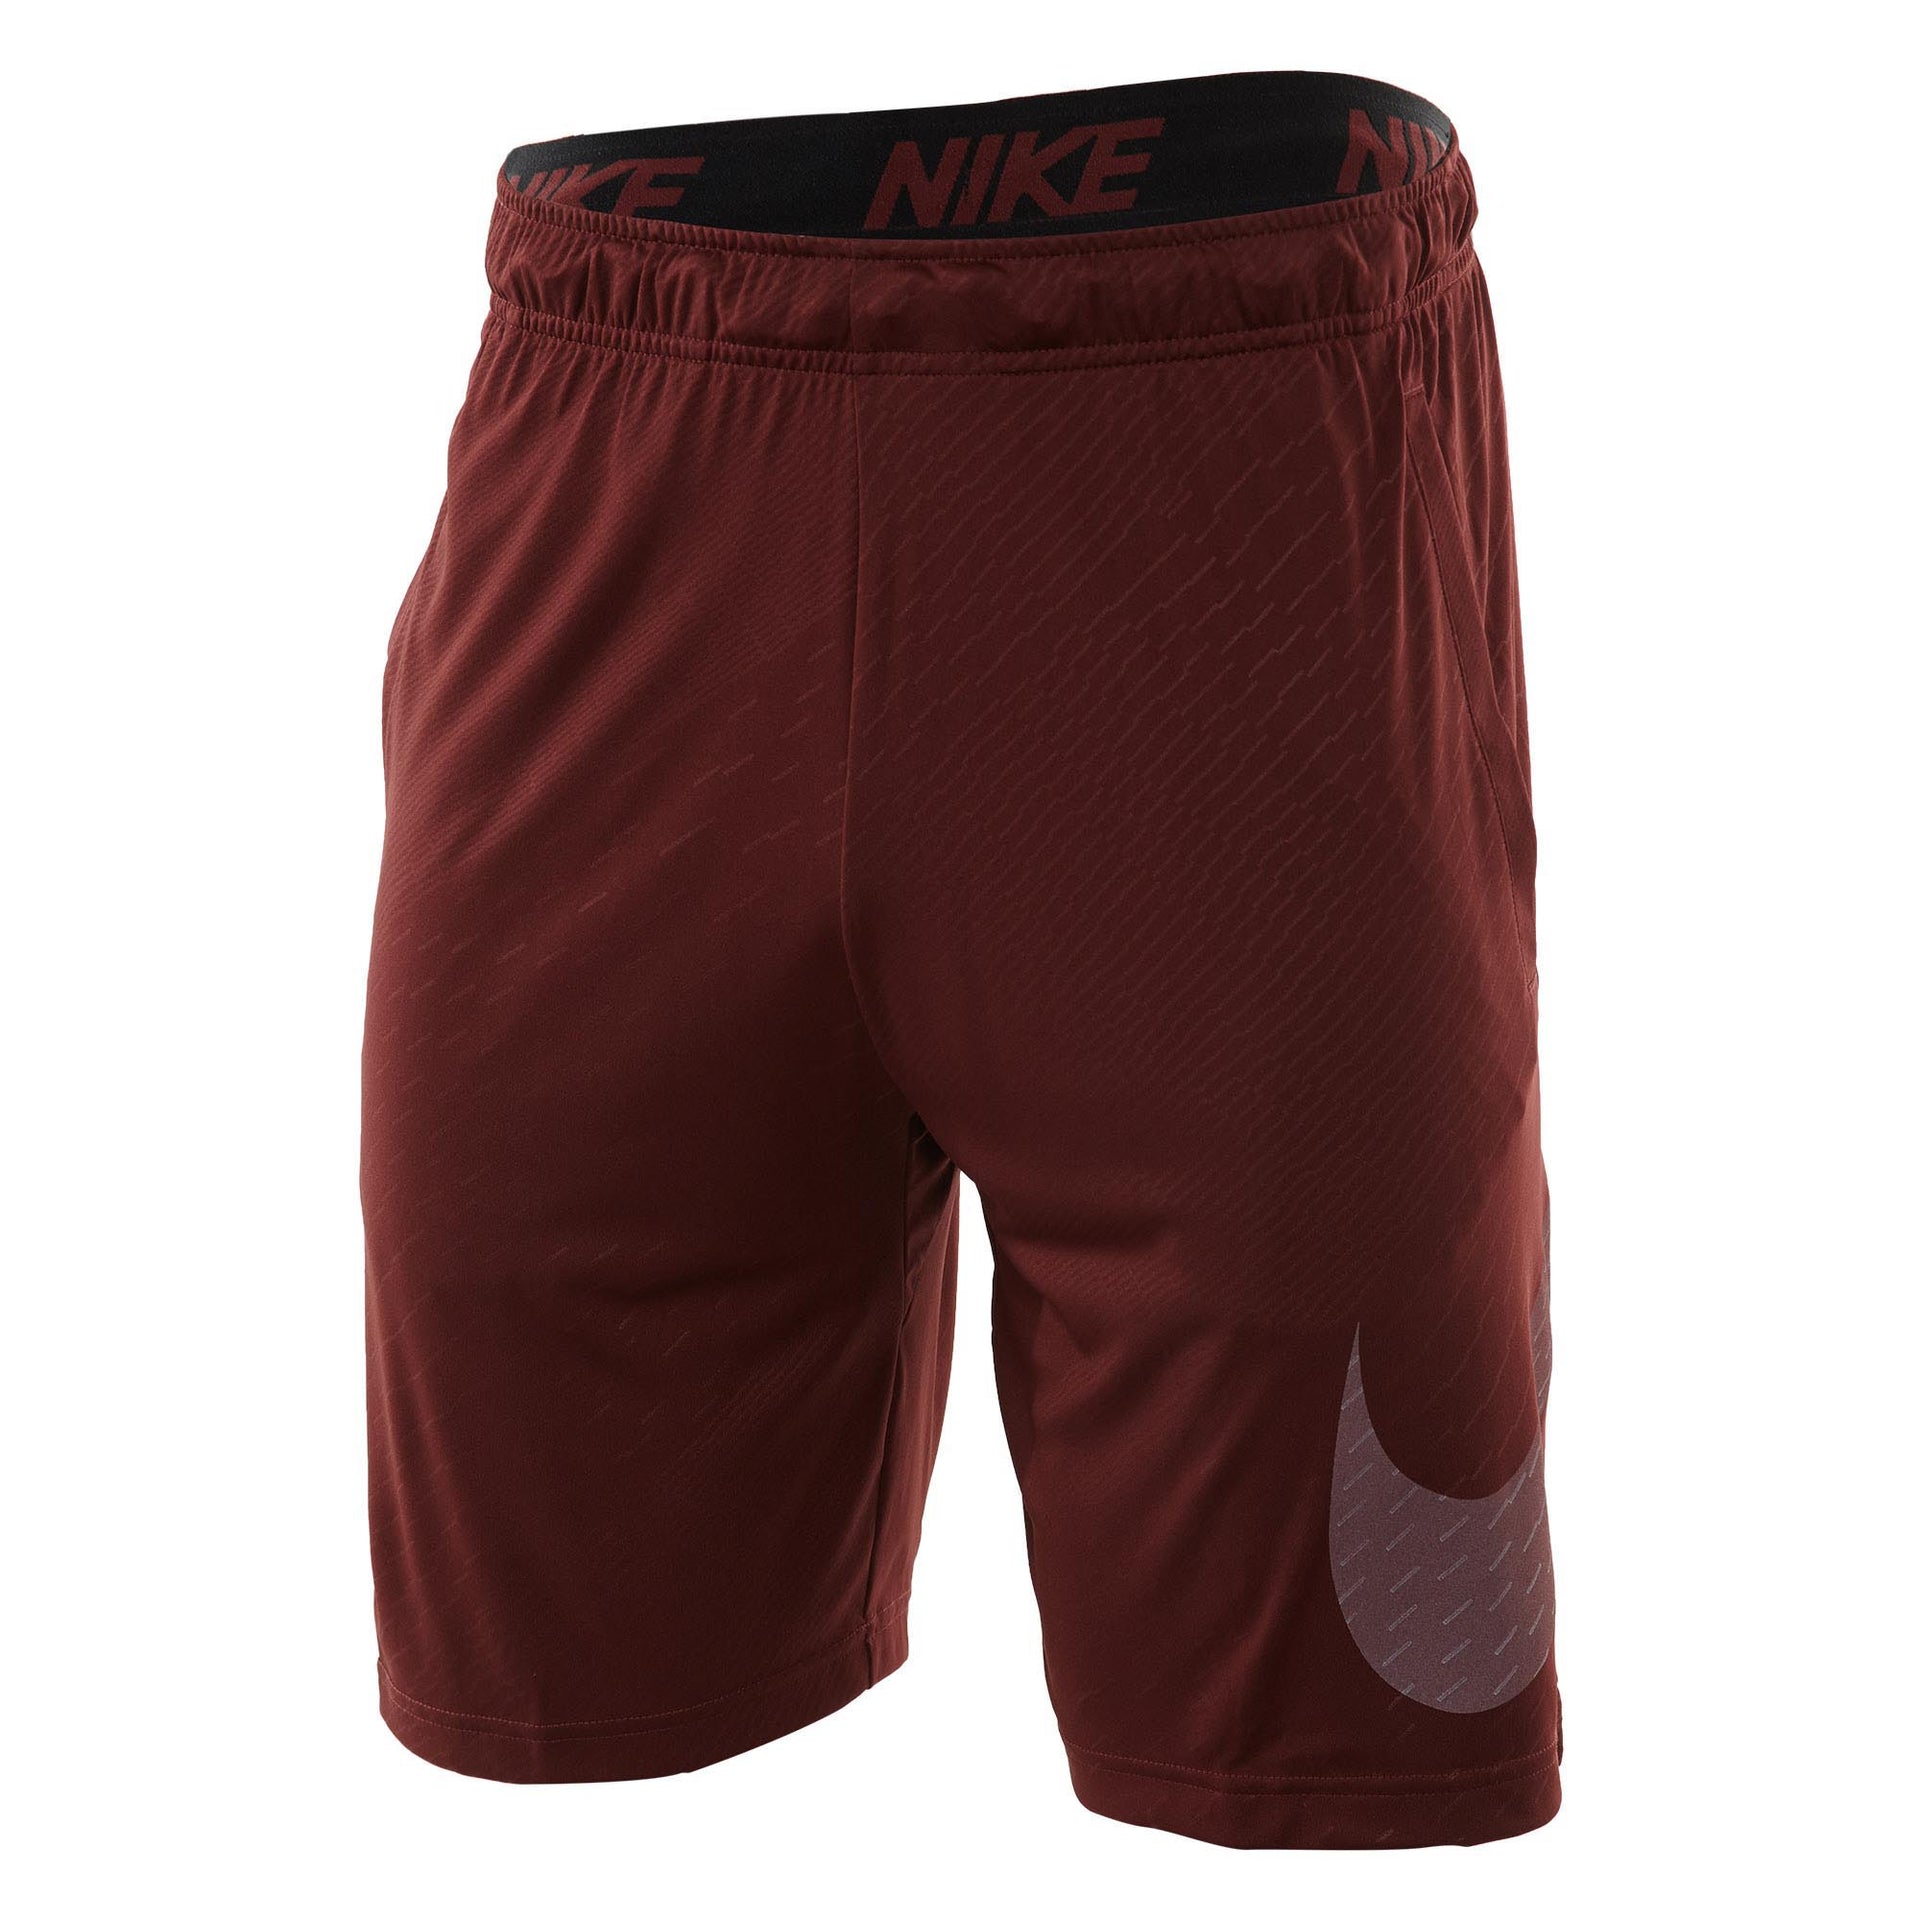 Nike Dry Embossed Training Short Mens Style : 860567